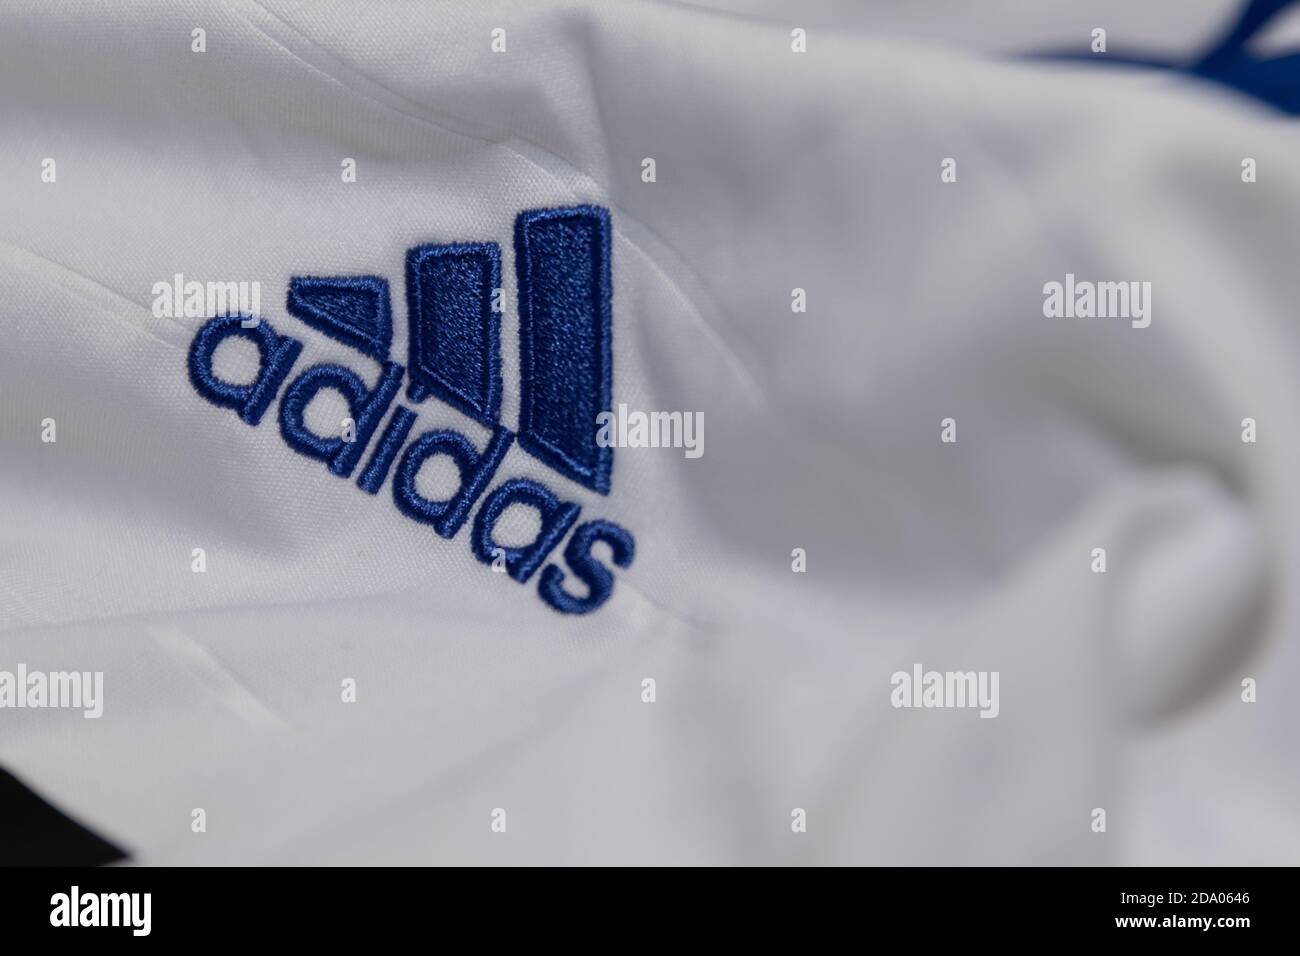 Blue Adidas Mountain Logo embroidered onto a white football shirt Stock  Photo - Alamy